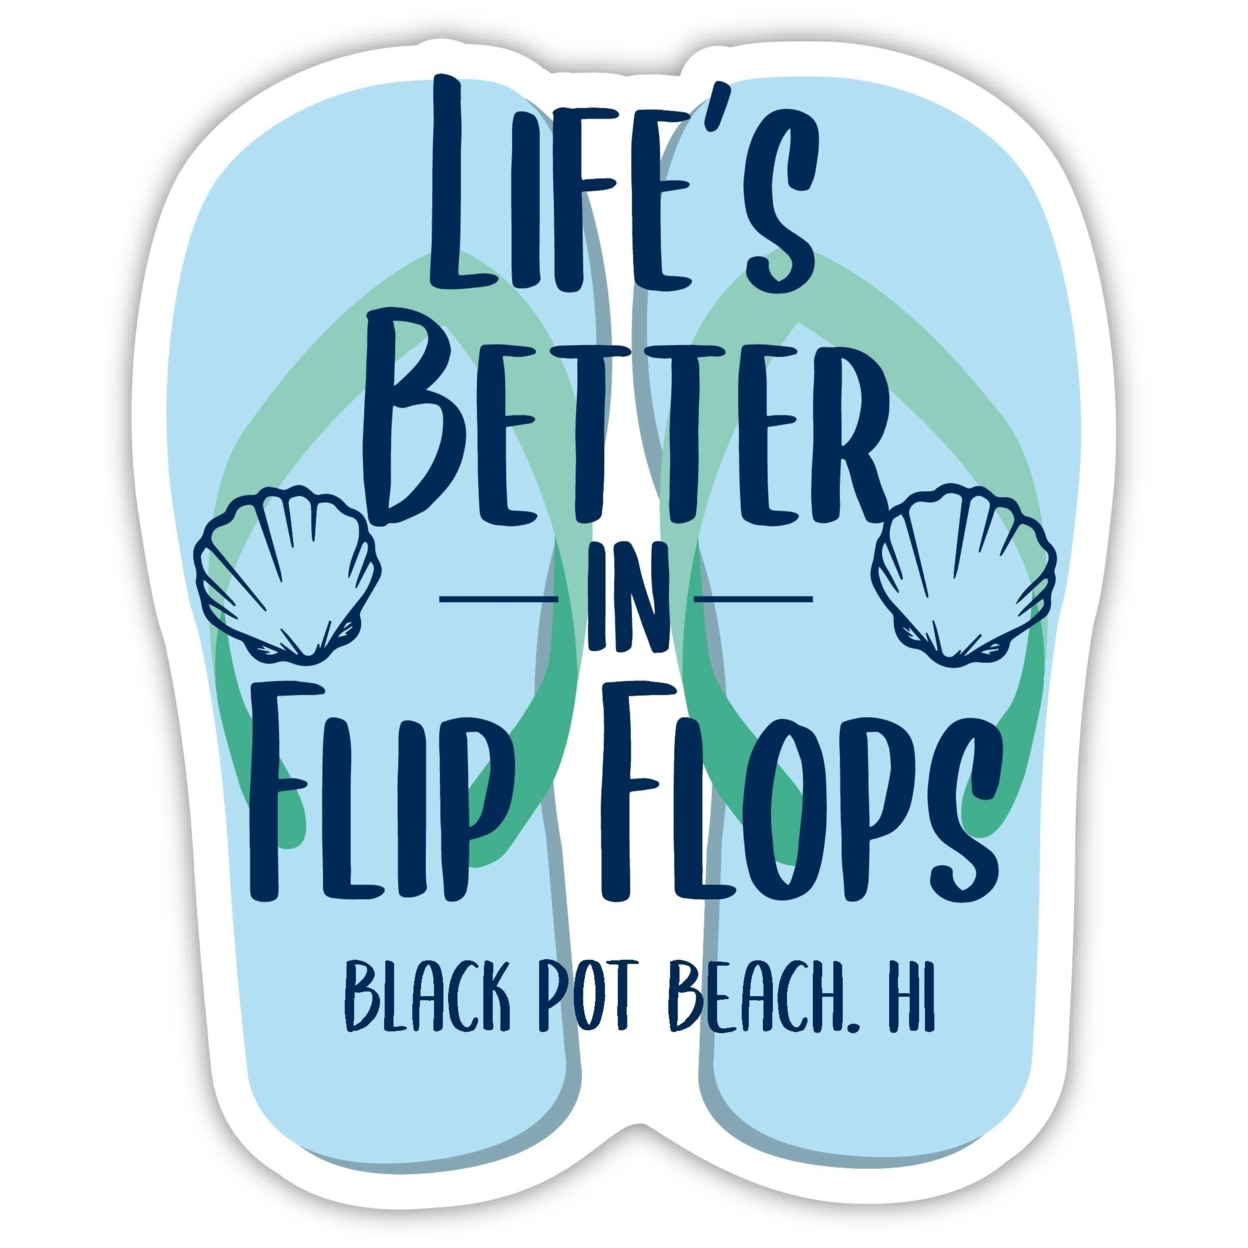 Black Pot Beach Hawaii Souvenir 4 Inch Vinyl Decal Sticker Flip Flop Design